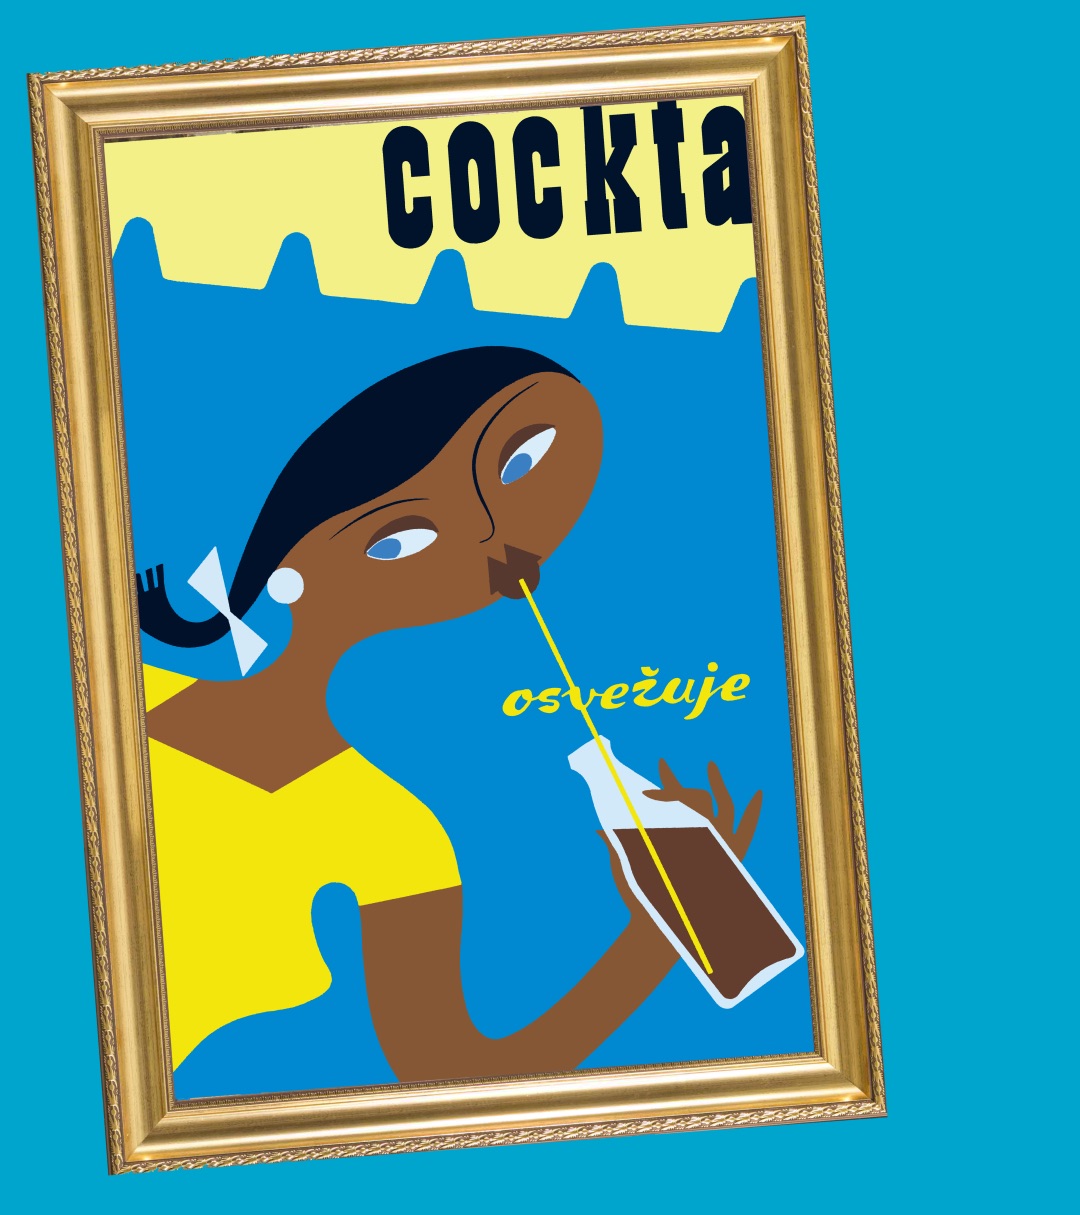 cockta vagaja